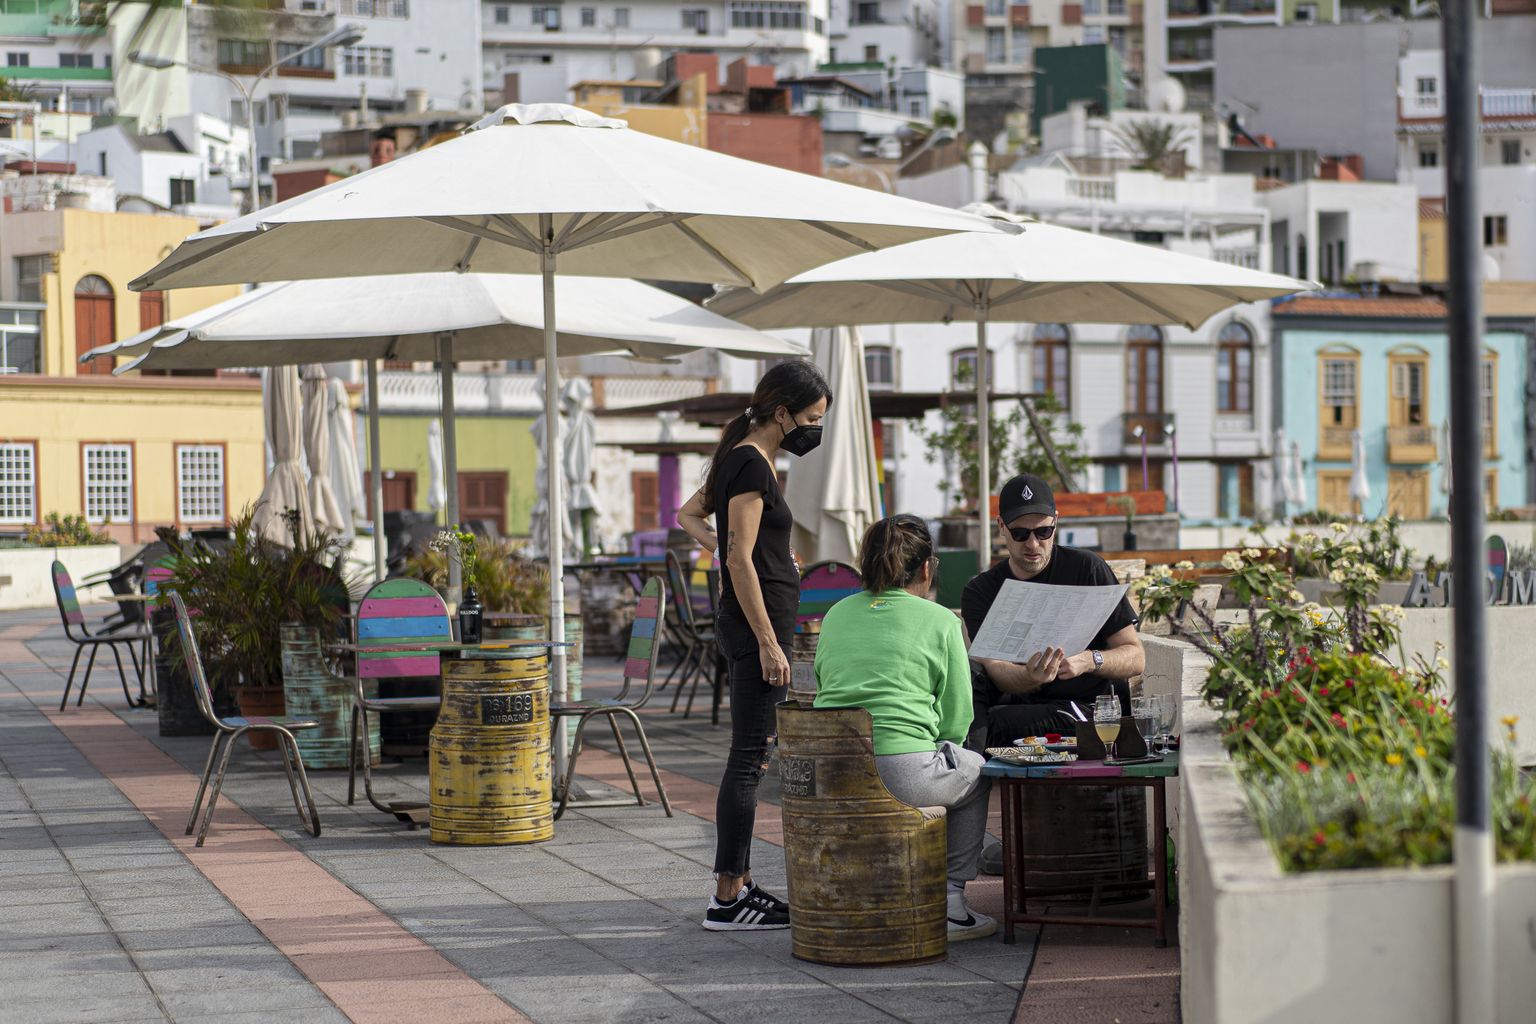 Inimesed kohvikus Tenerifel. Hispaaniat on selle omalaadse jaeturu pärast alkoholi kättesaadavuse probleemid eriti tugevalt tabanud.